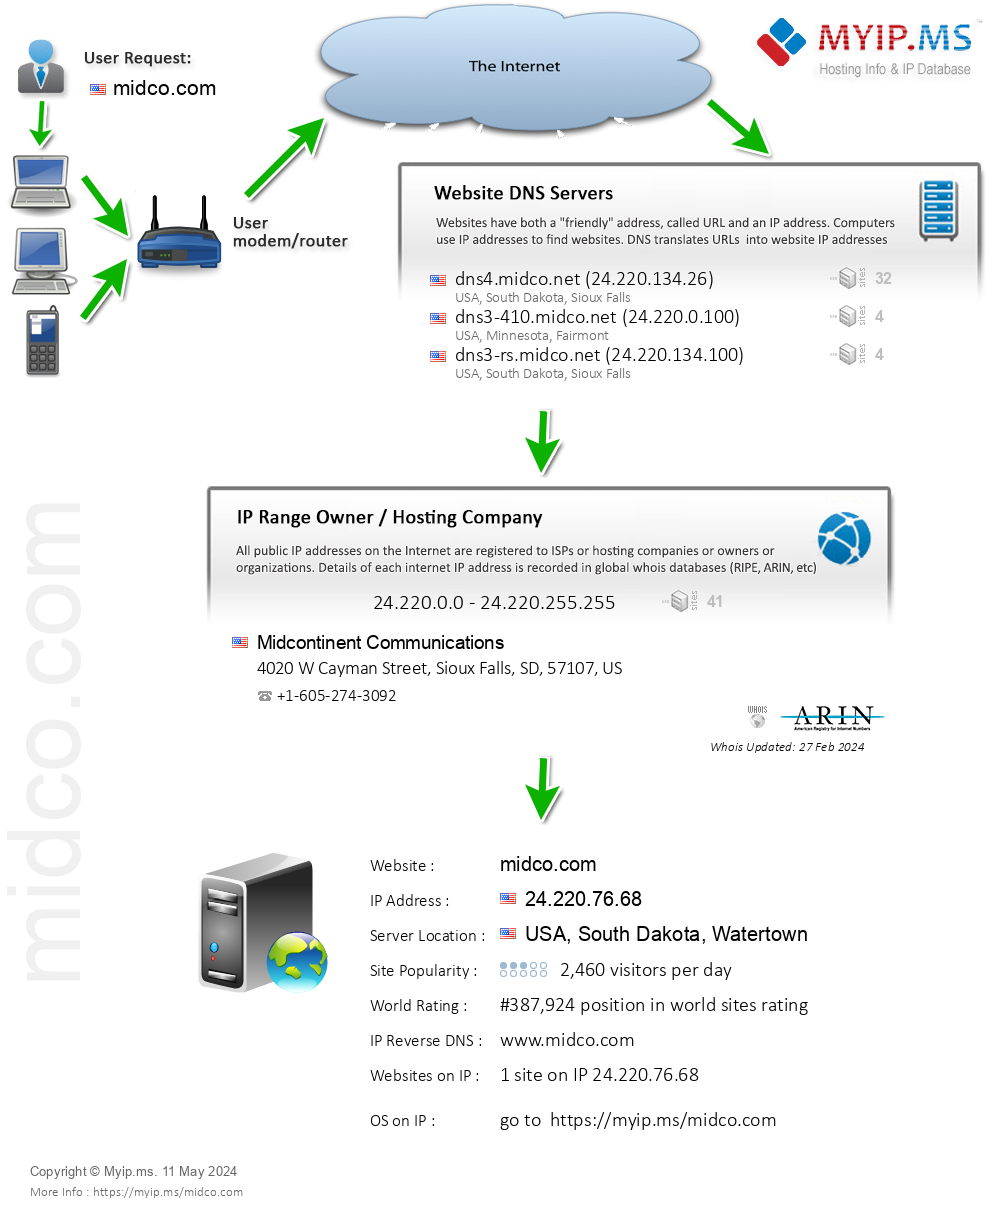 Midco.com - Website Hosting Visual IP Diagram